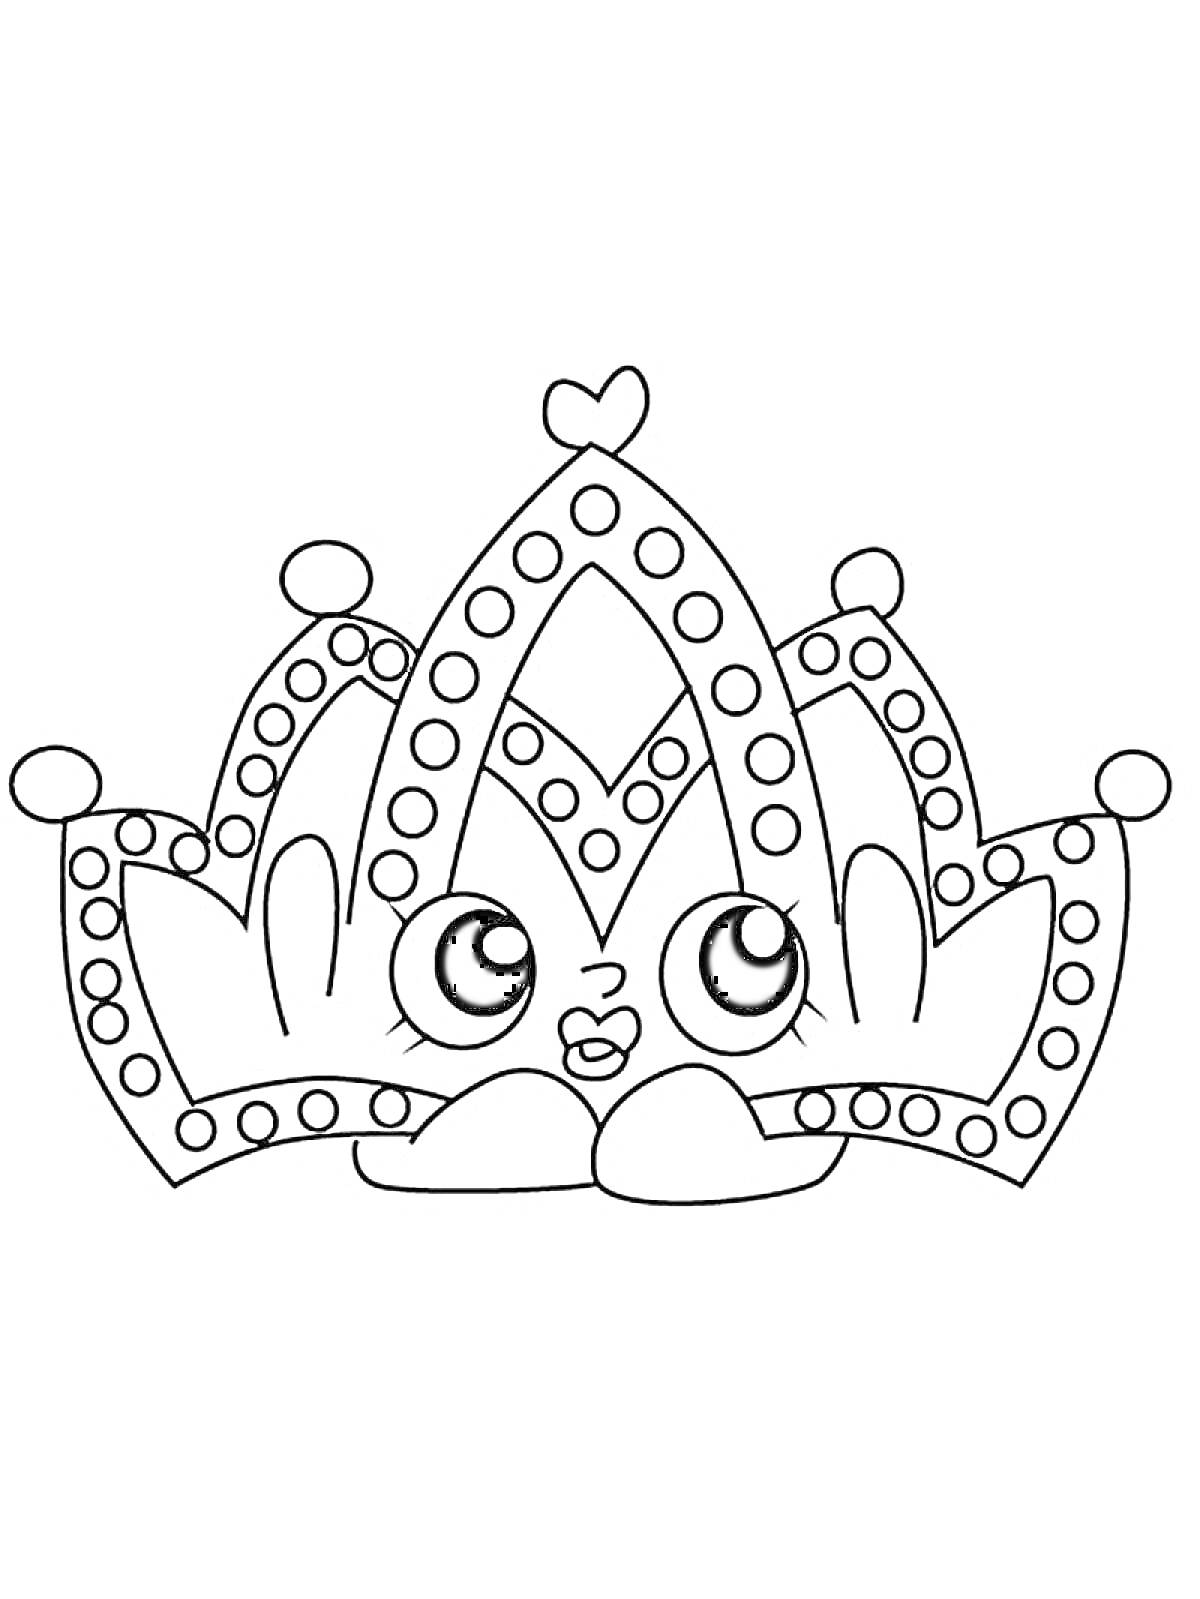 Раскраска Корона Шопкинс с большими глазами и улыбающимся лицом, с сердечком на вершине и множественными кружками вокруг